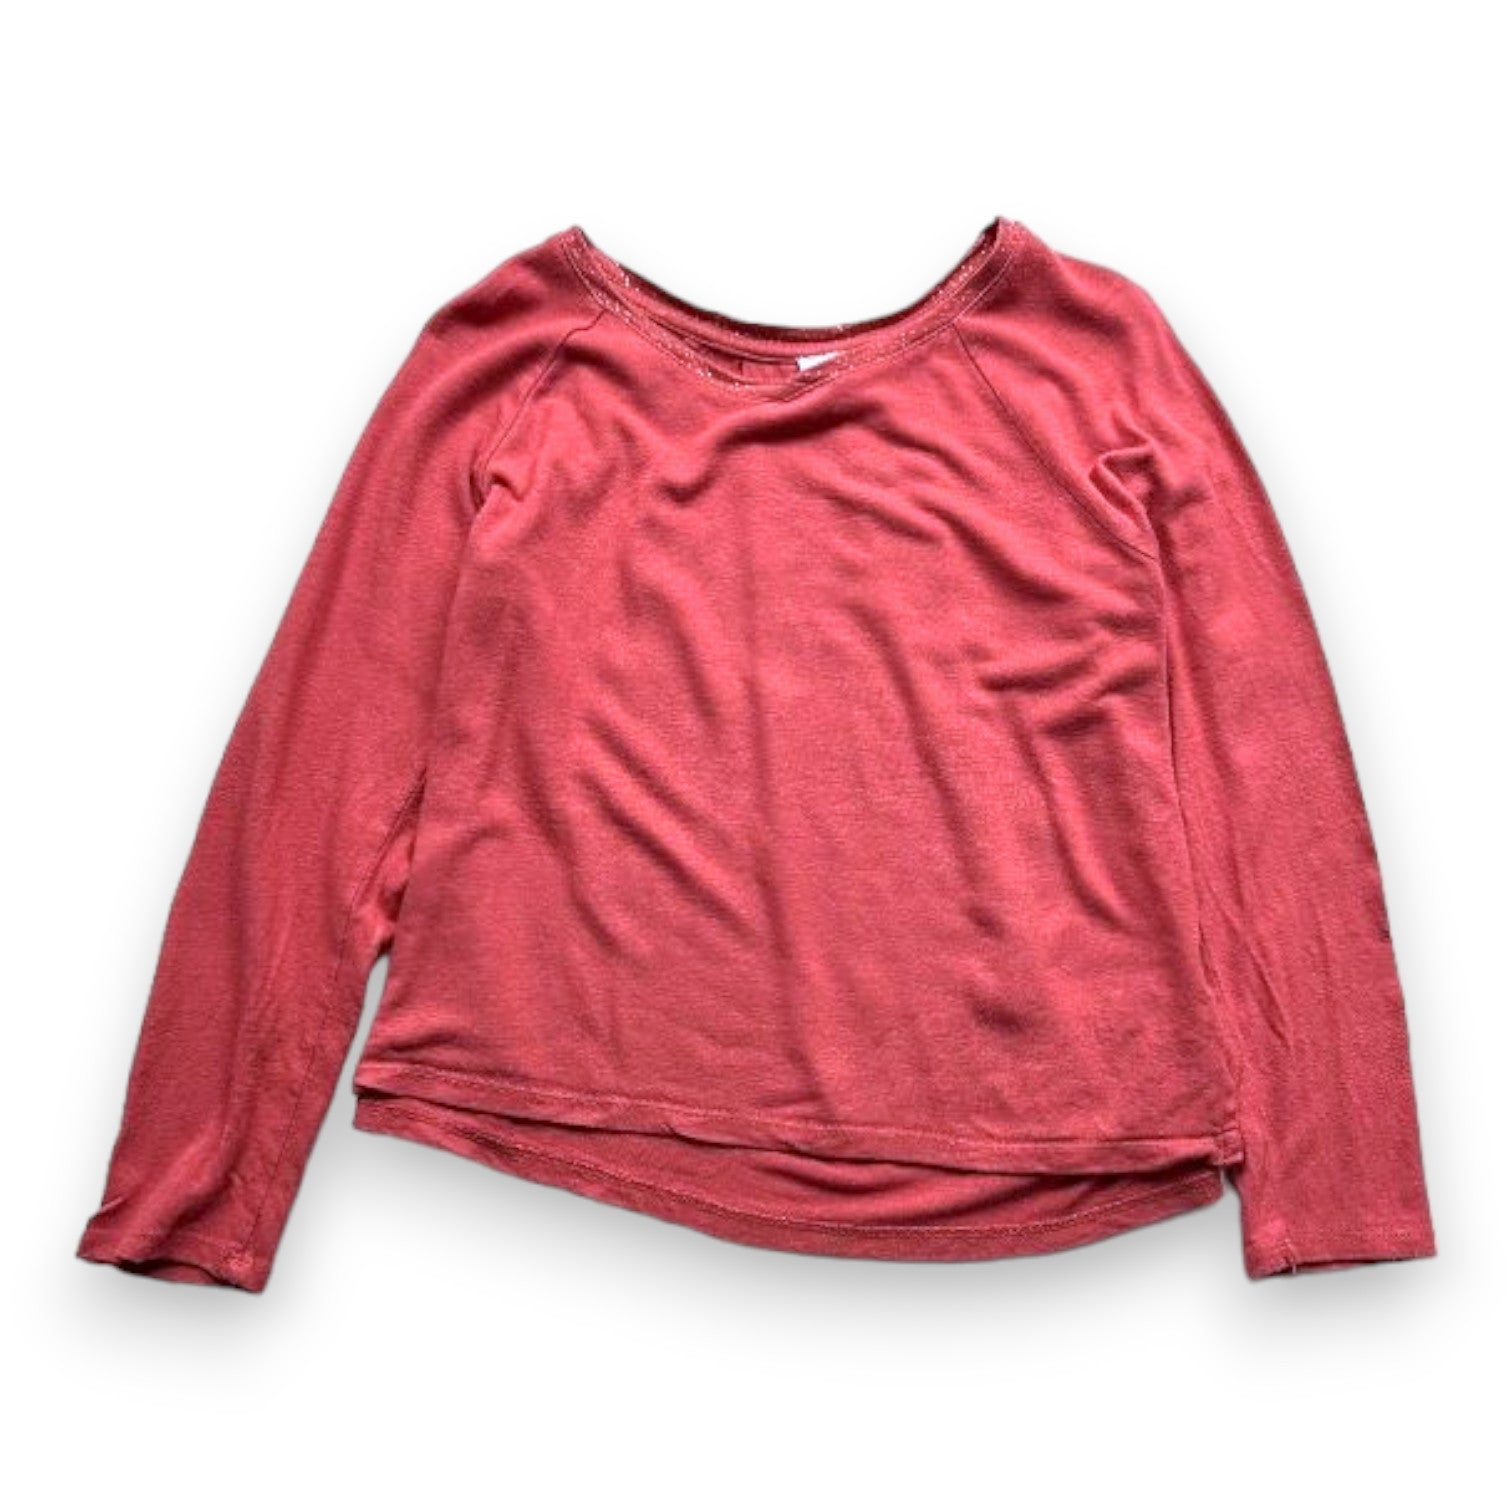 LITTLE CARL MARC JOHN - T-shirt à manches longues rose avec imprimé dans le dos - 10 ans